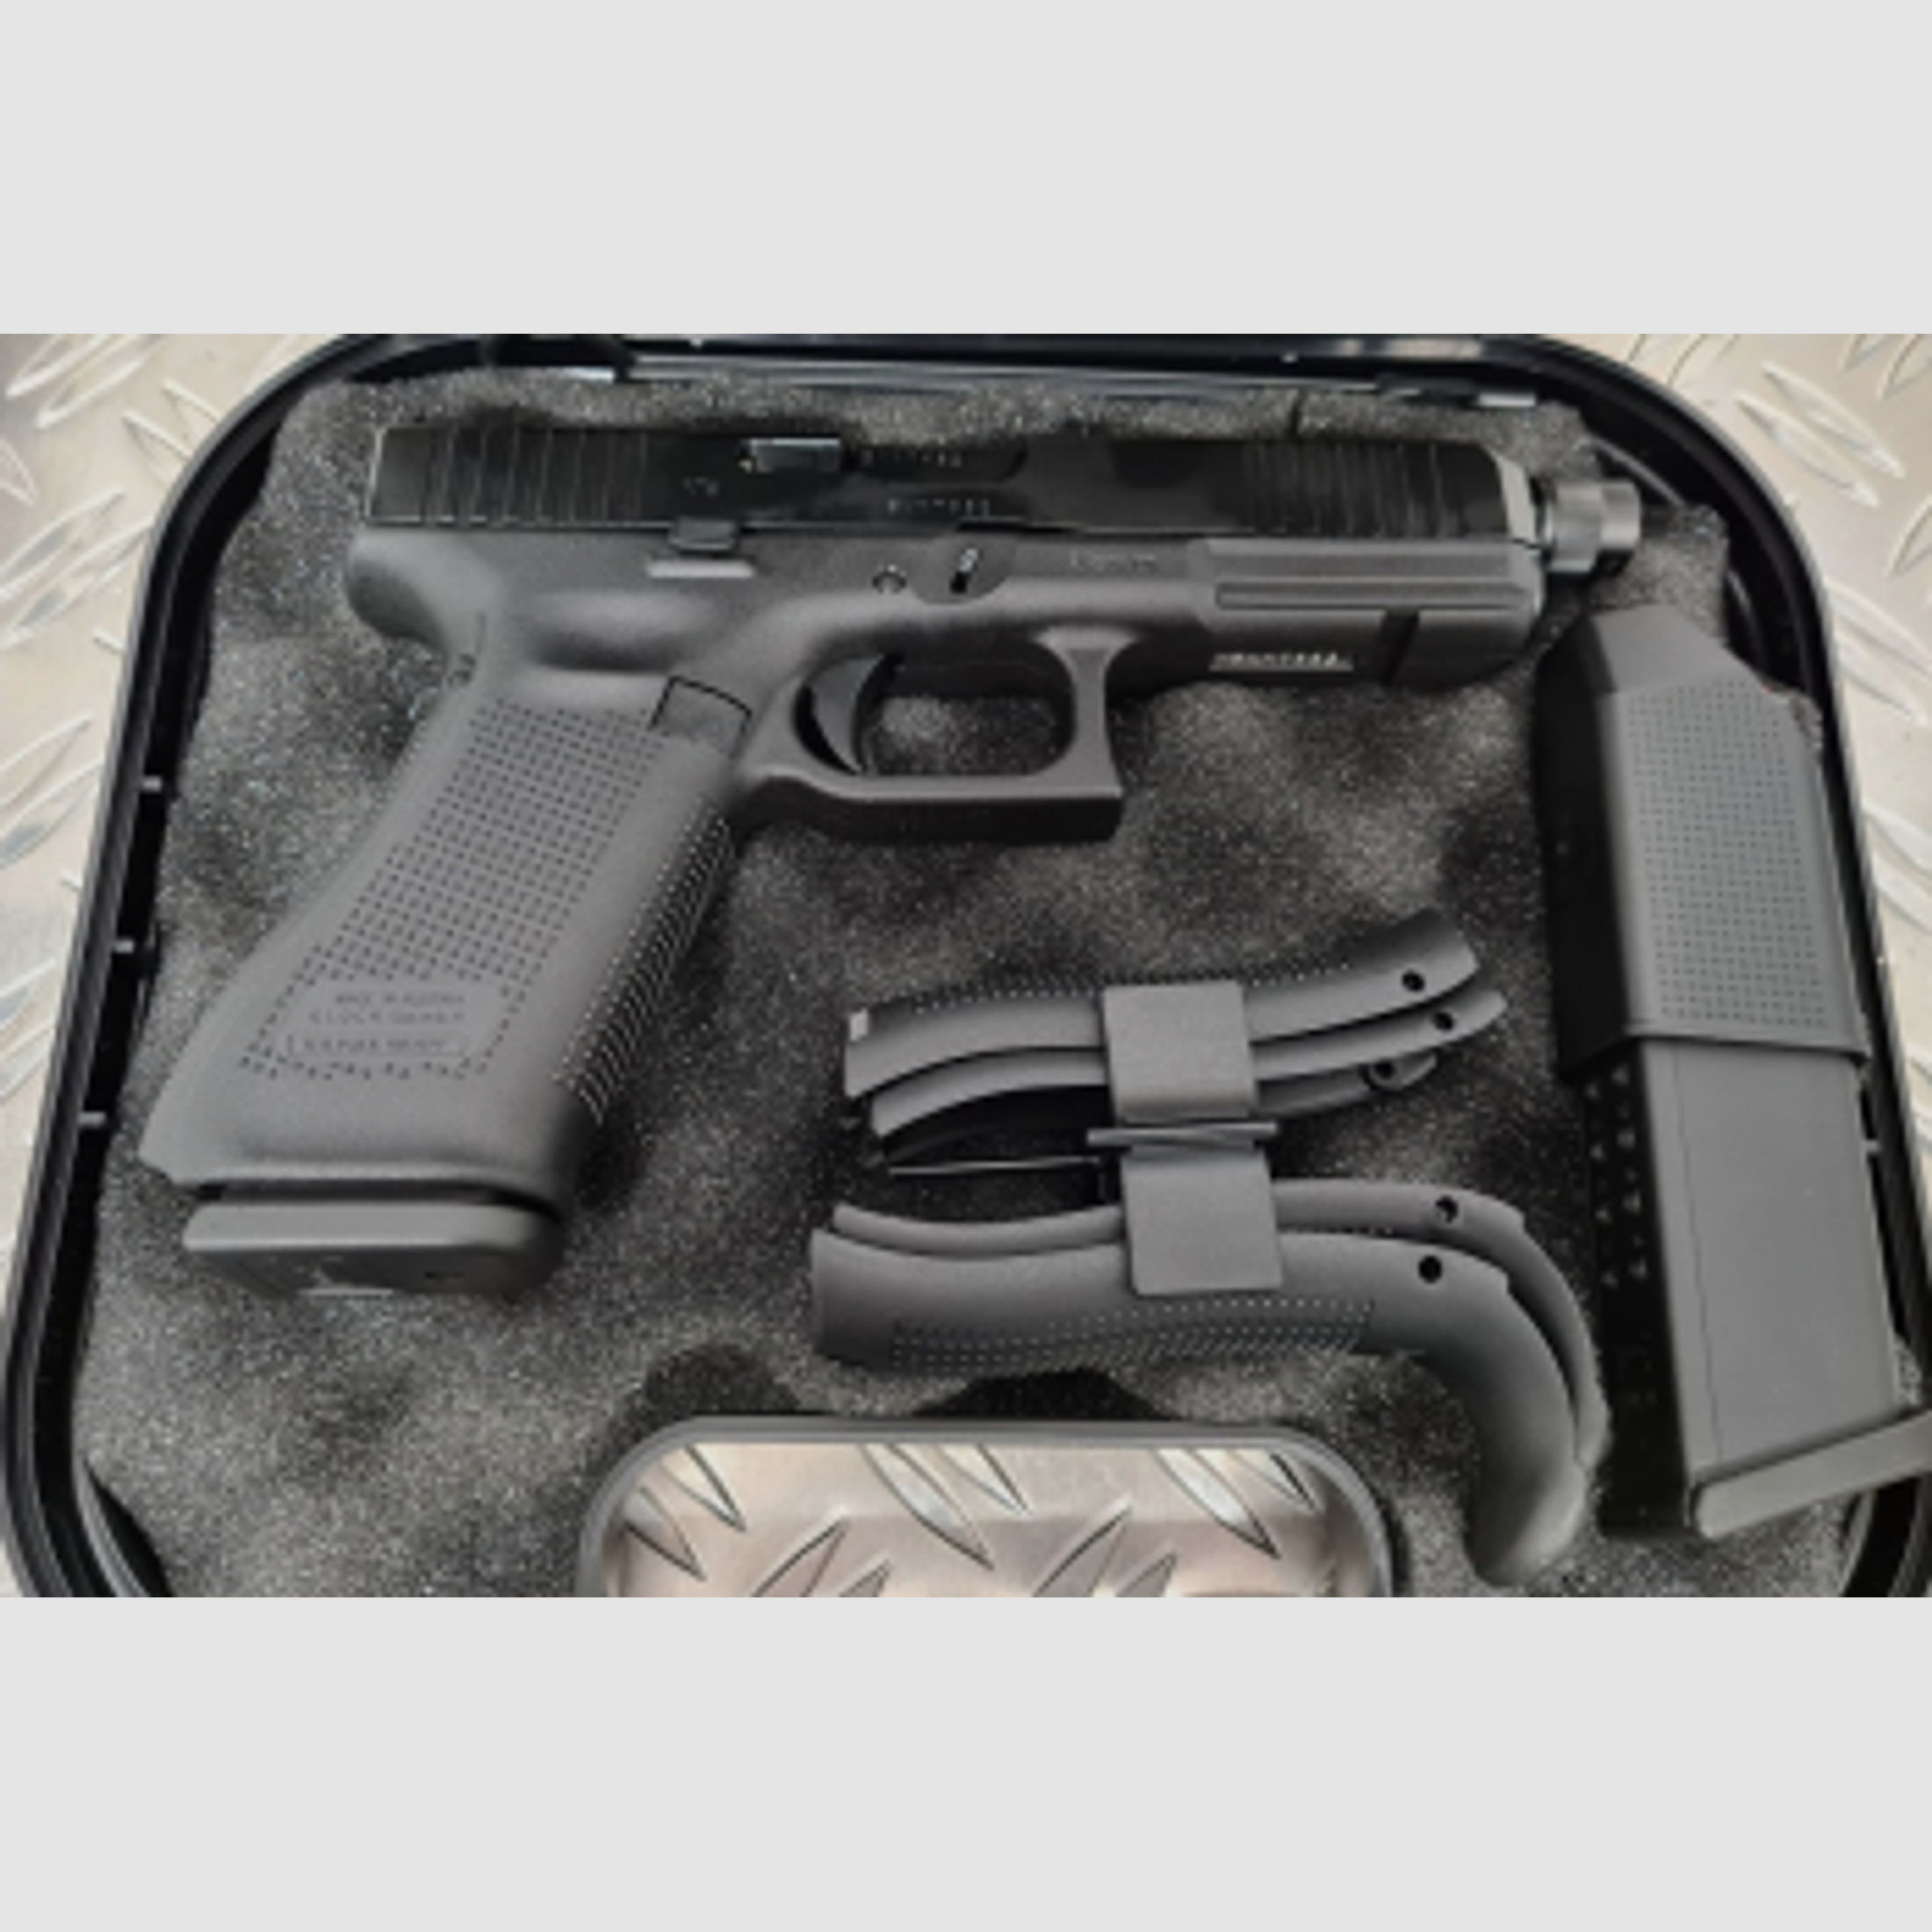 Glock 17 Gen 5 9mm Luger mit Gewindelauf